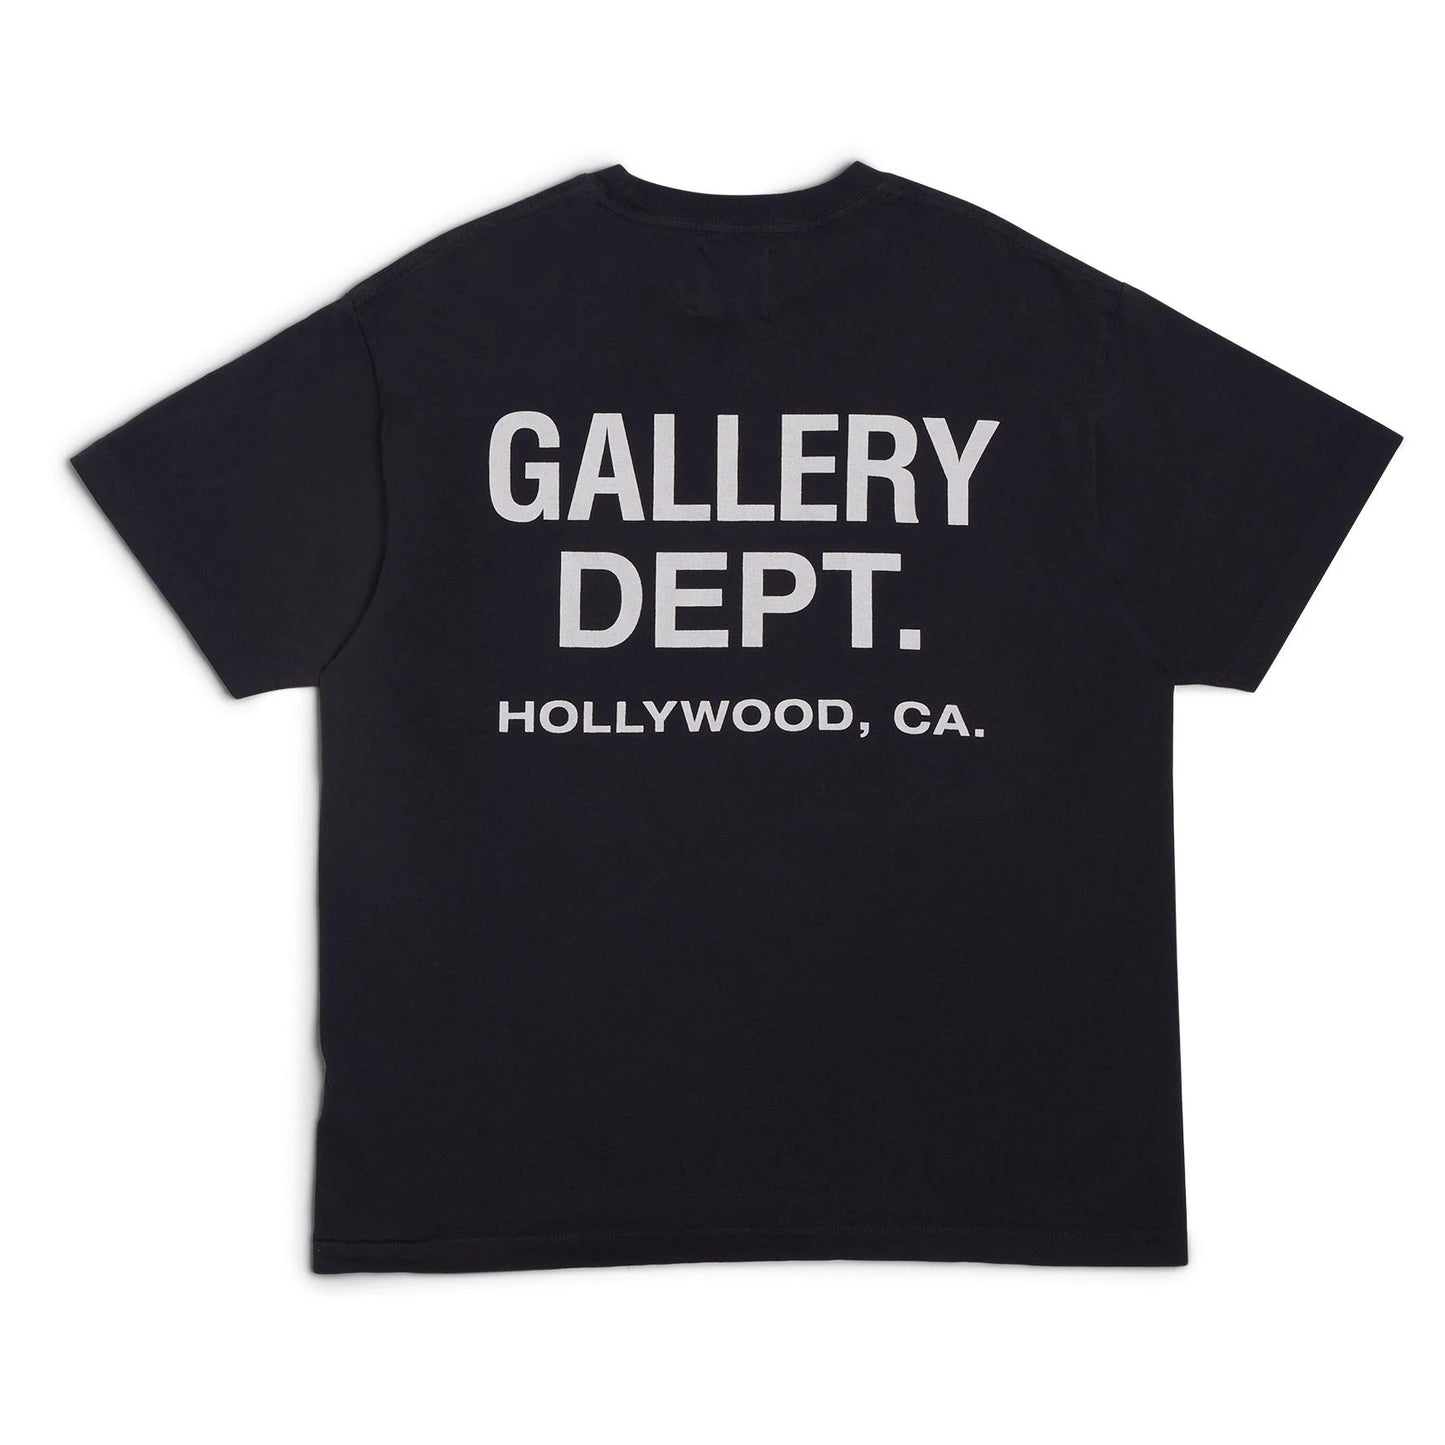 Gallery Dept. Souvenir T-shirt Black - Sneakersbe Sneakers Sale Online